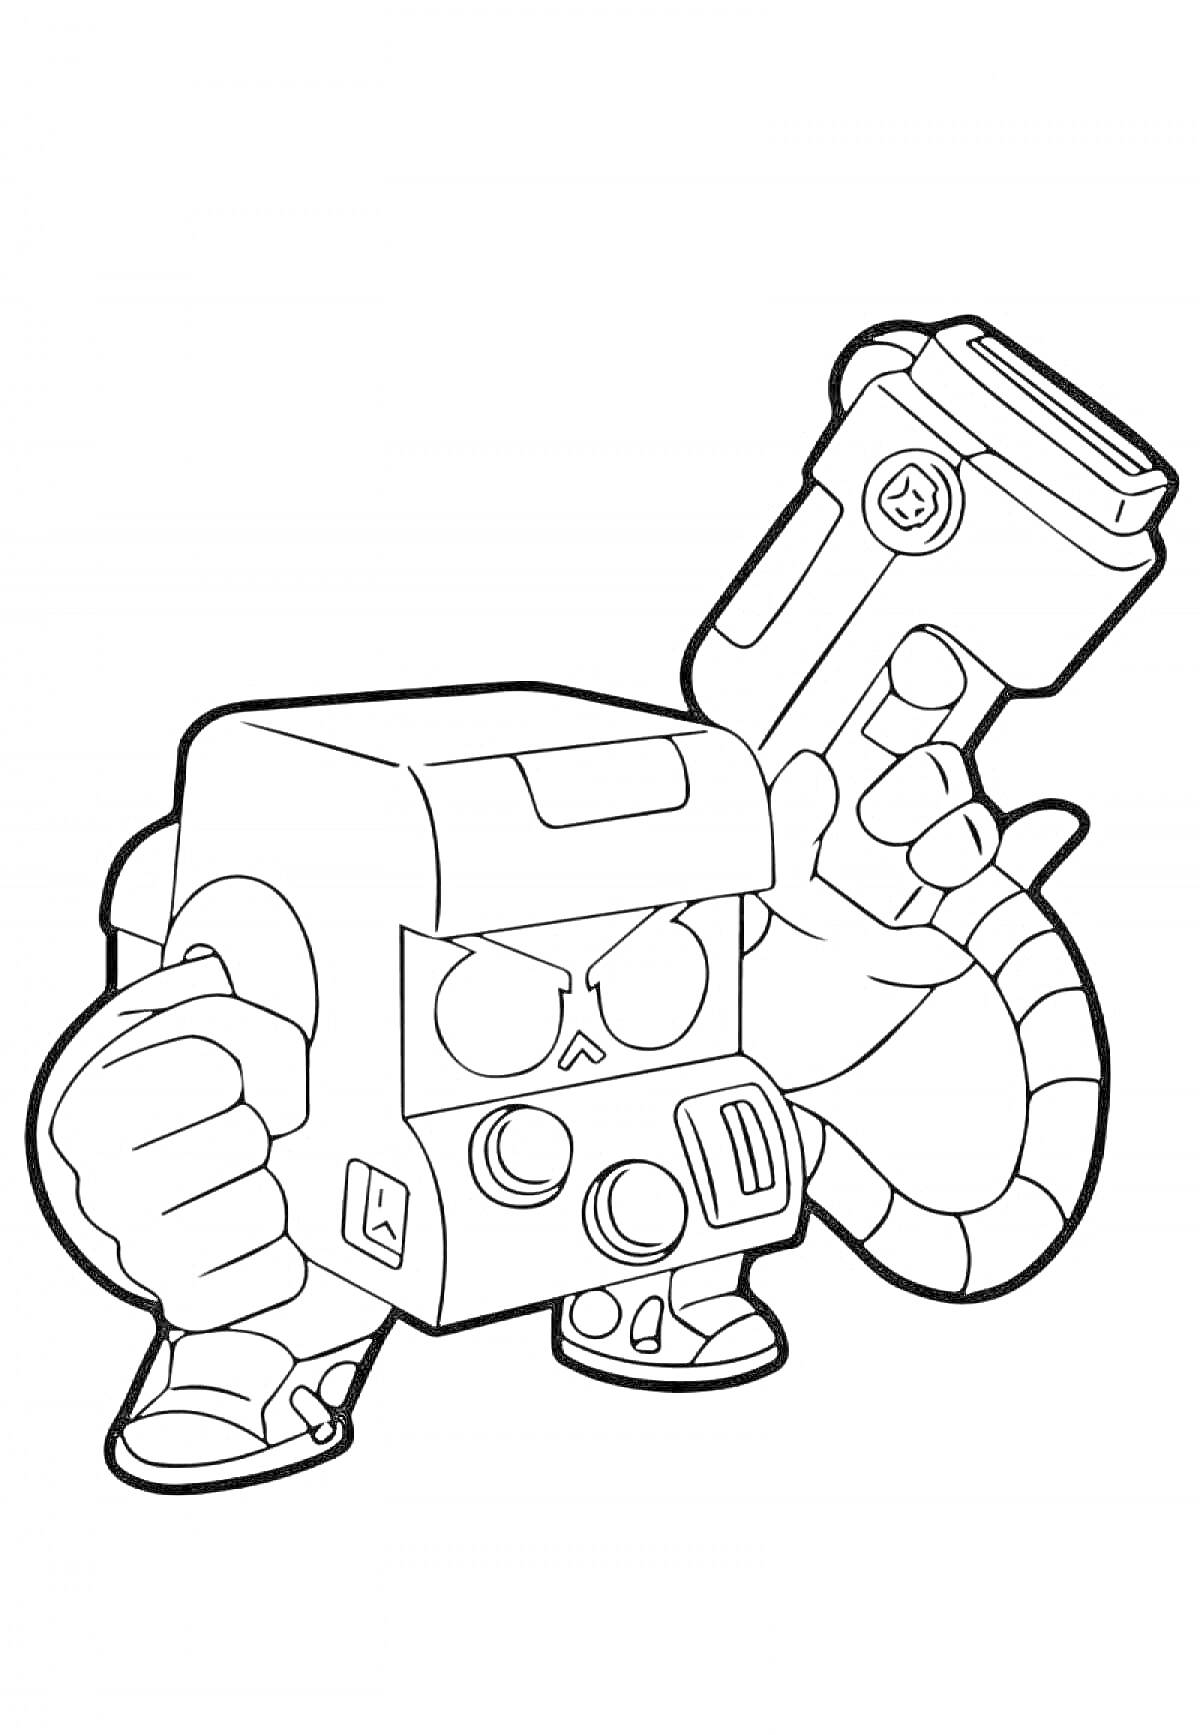 Раскраска Робот-боец с большим лазерным оружием из игры Браво Старс